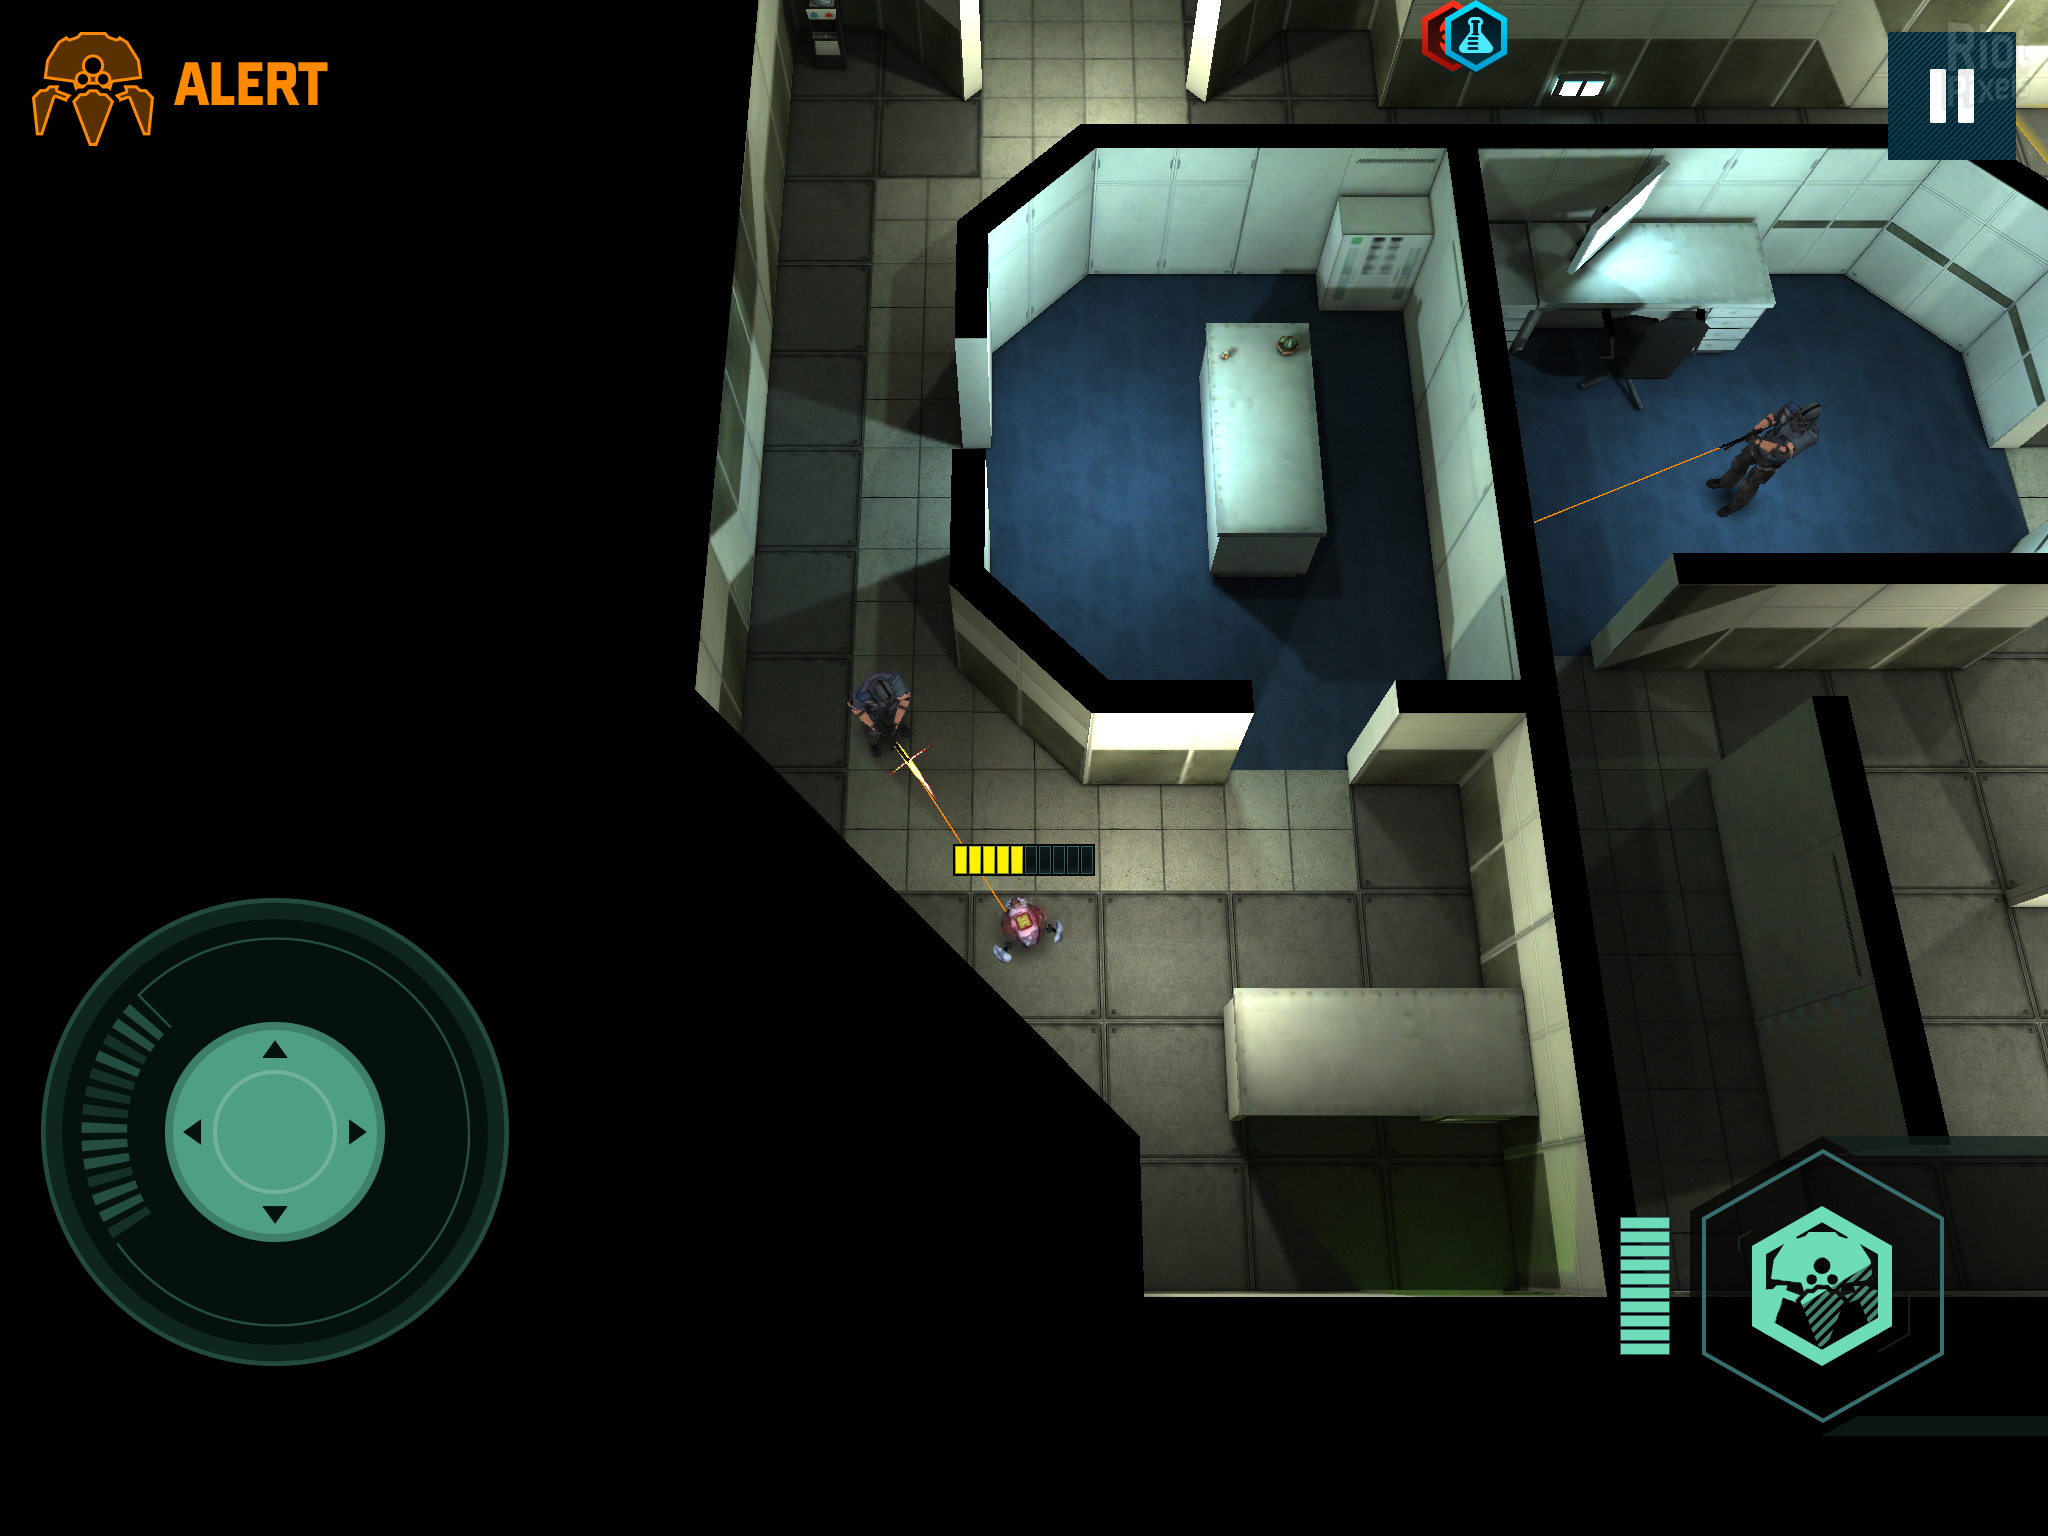 Finito escribir una carta Salto Splinter Cell: Blacklist - Spider-Bot - game screenshots at Riot Pixels,  images